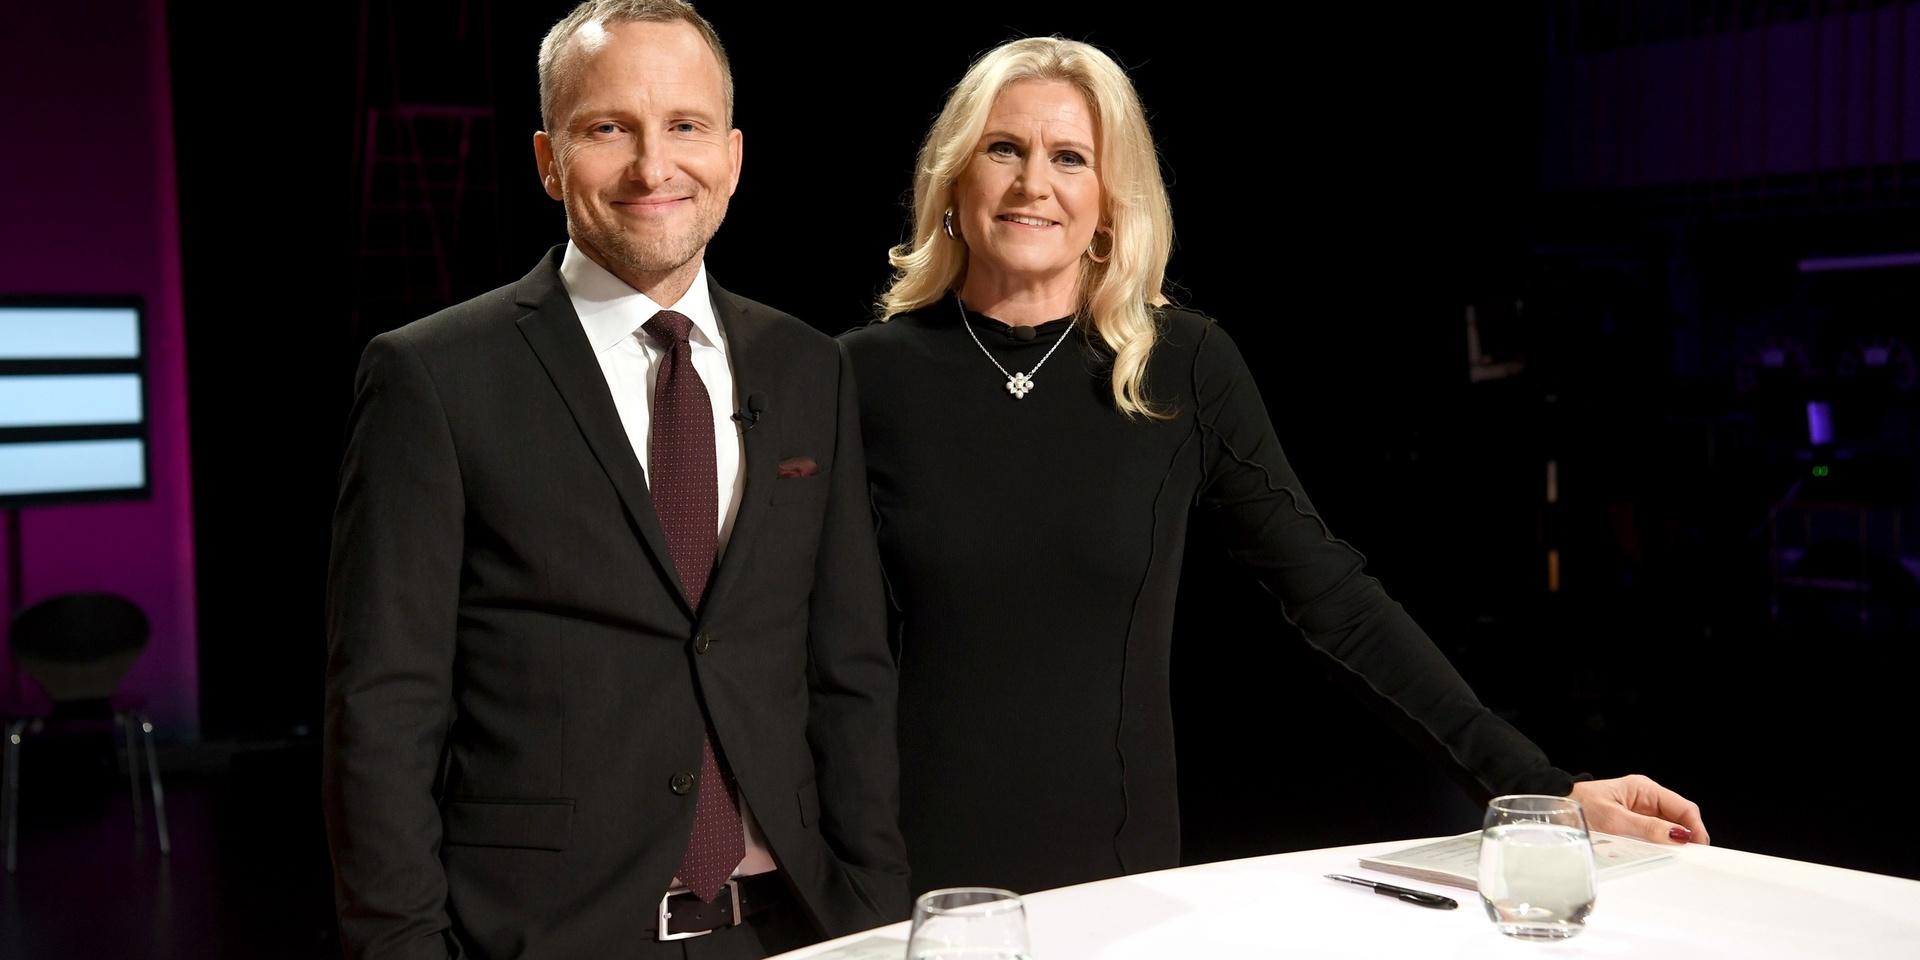 Programledarna Anders Holmberg och Camilla Kvartoft hade det inte lätt att hålla ordning under söndagens partiledardebatt i Agenda i SVT.